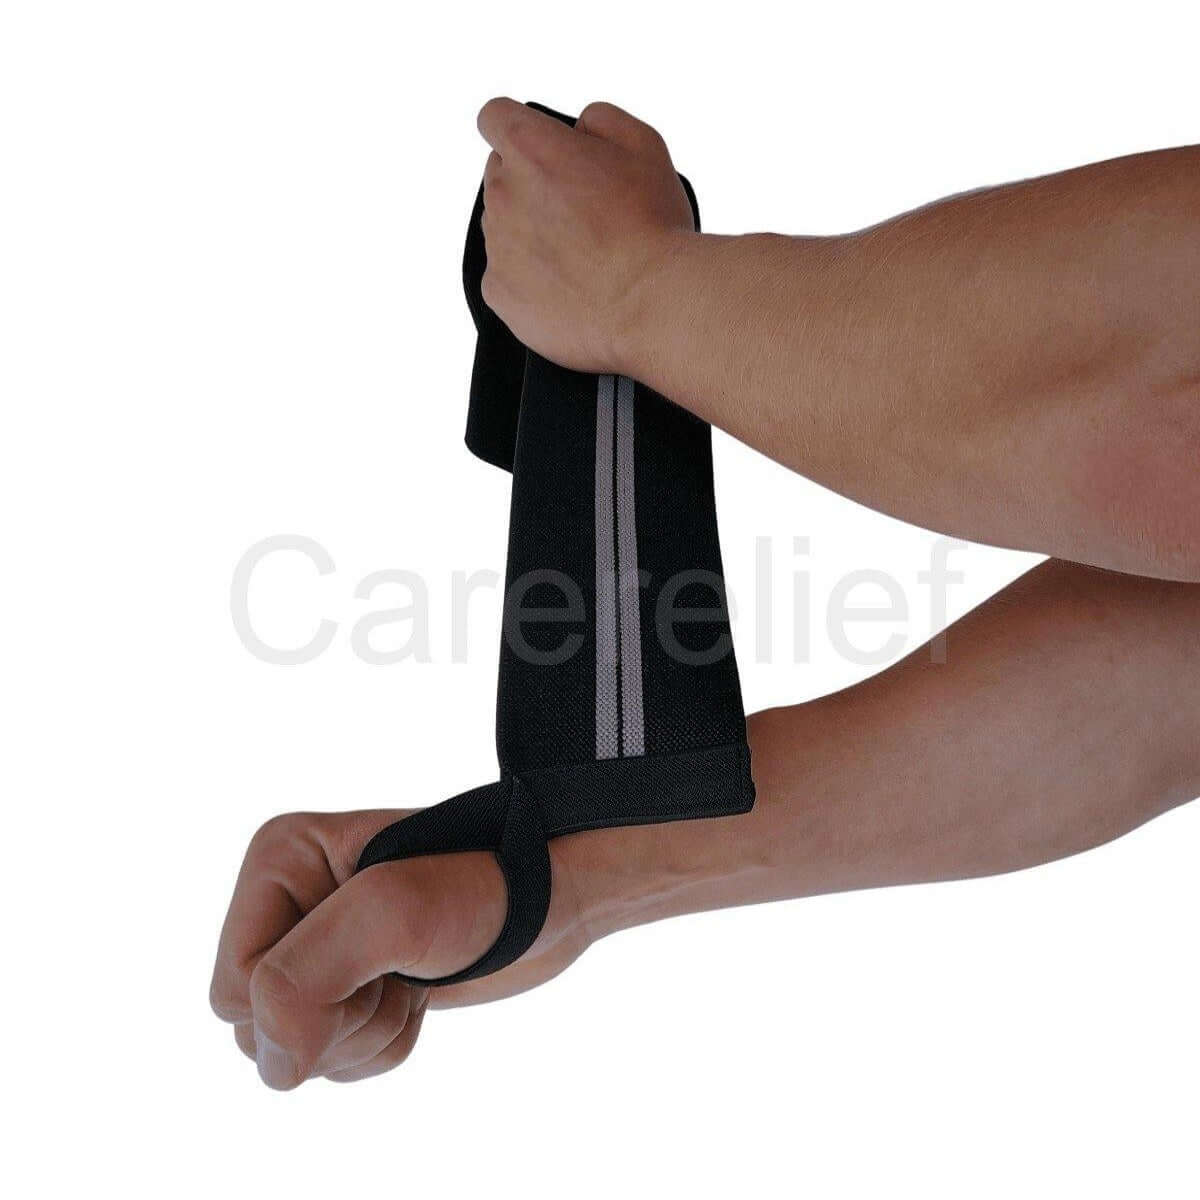 Wrist wraps sæt 60 cm til crossfit og træning med tunge løft. Køb håndledsbind med håndledsstøtte til sport og træning i sort/grå hos Carerelief.dk